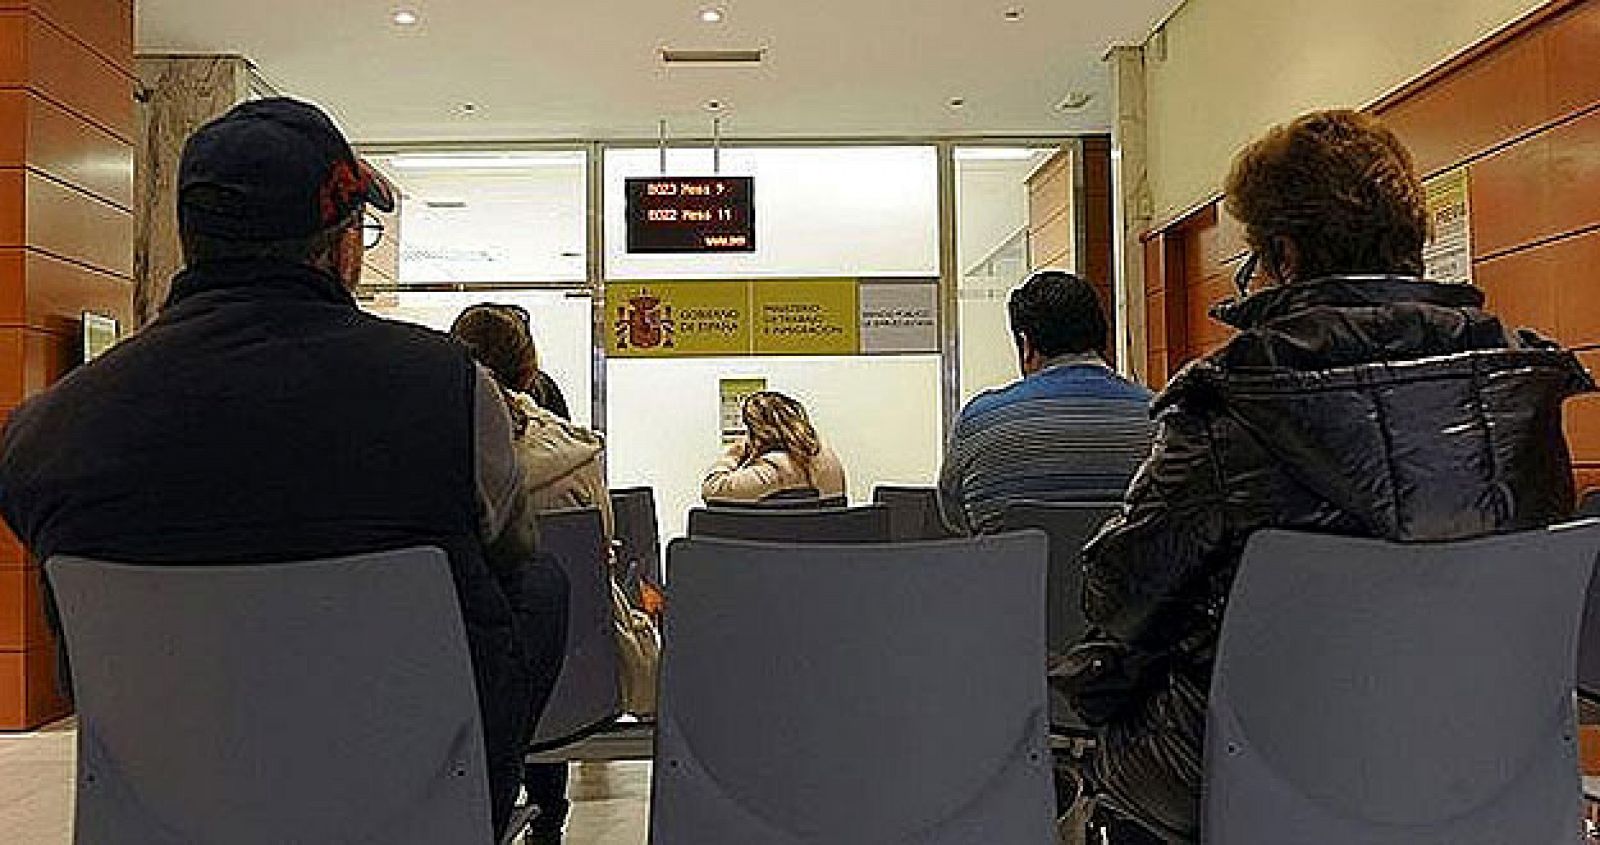 Varias personas esperan su turno para ser atendidos en una oficina de empleo.